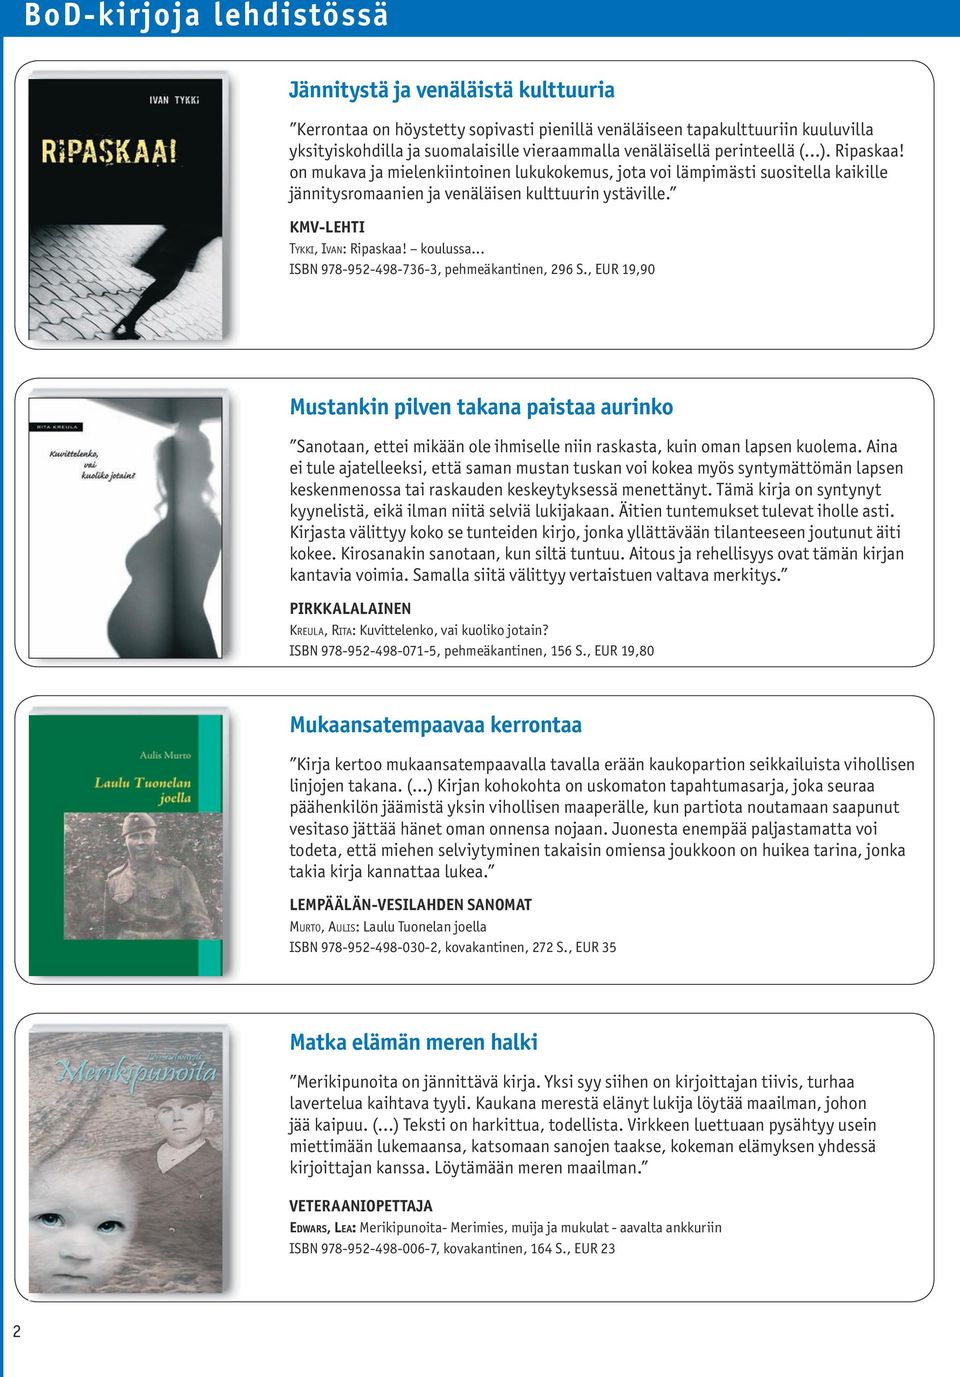 KMV-lehti Ty k k i, Iva n: Ripaskaa! koulussa... ISBN 978-952-498-736-3, pehmeäkantinen, 296 S.